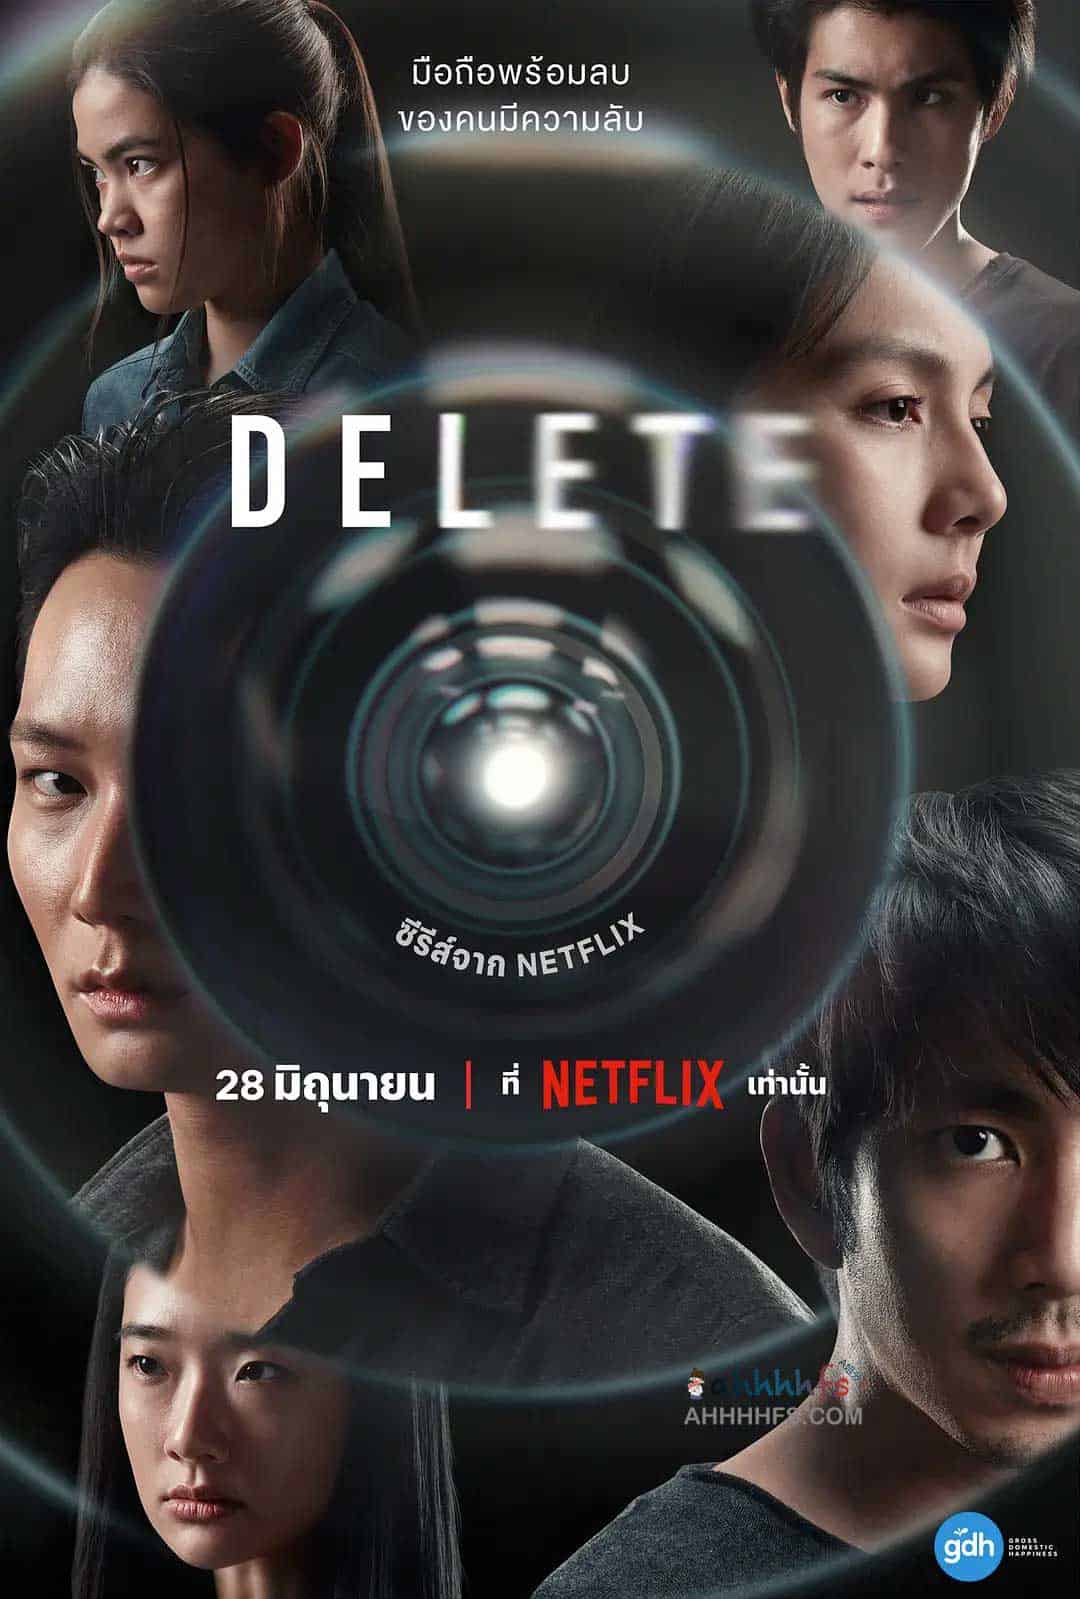 永久删除 Delete (2023)中字1080p